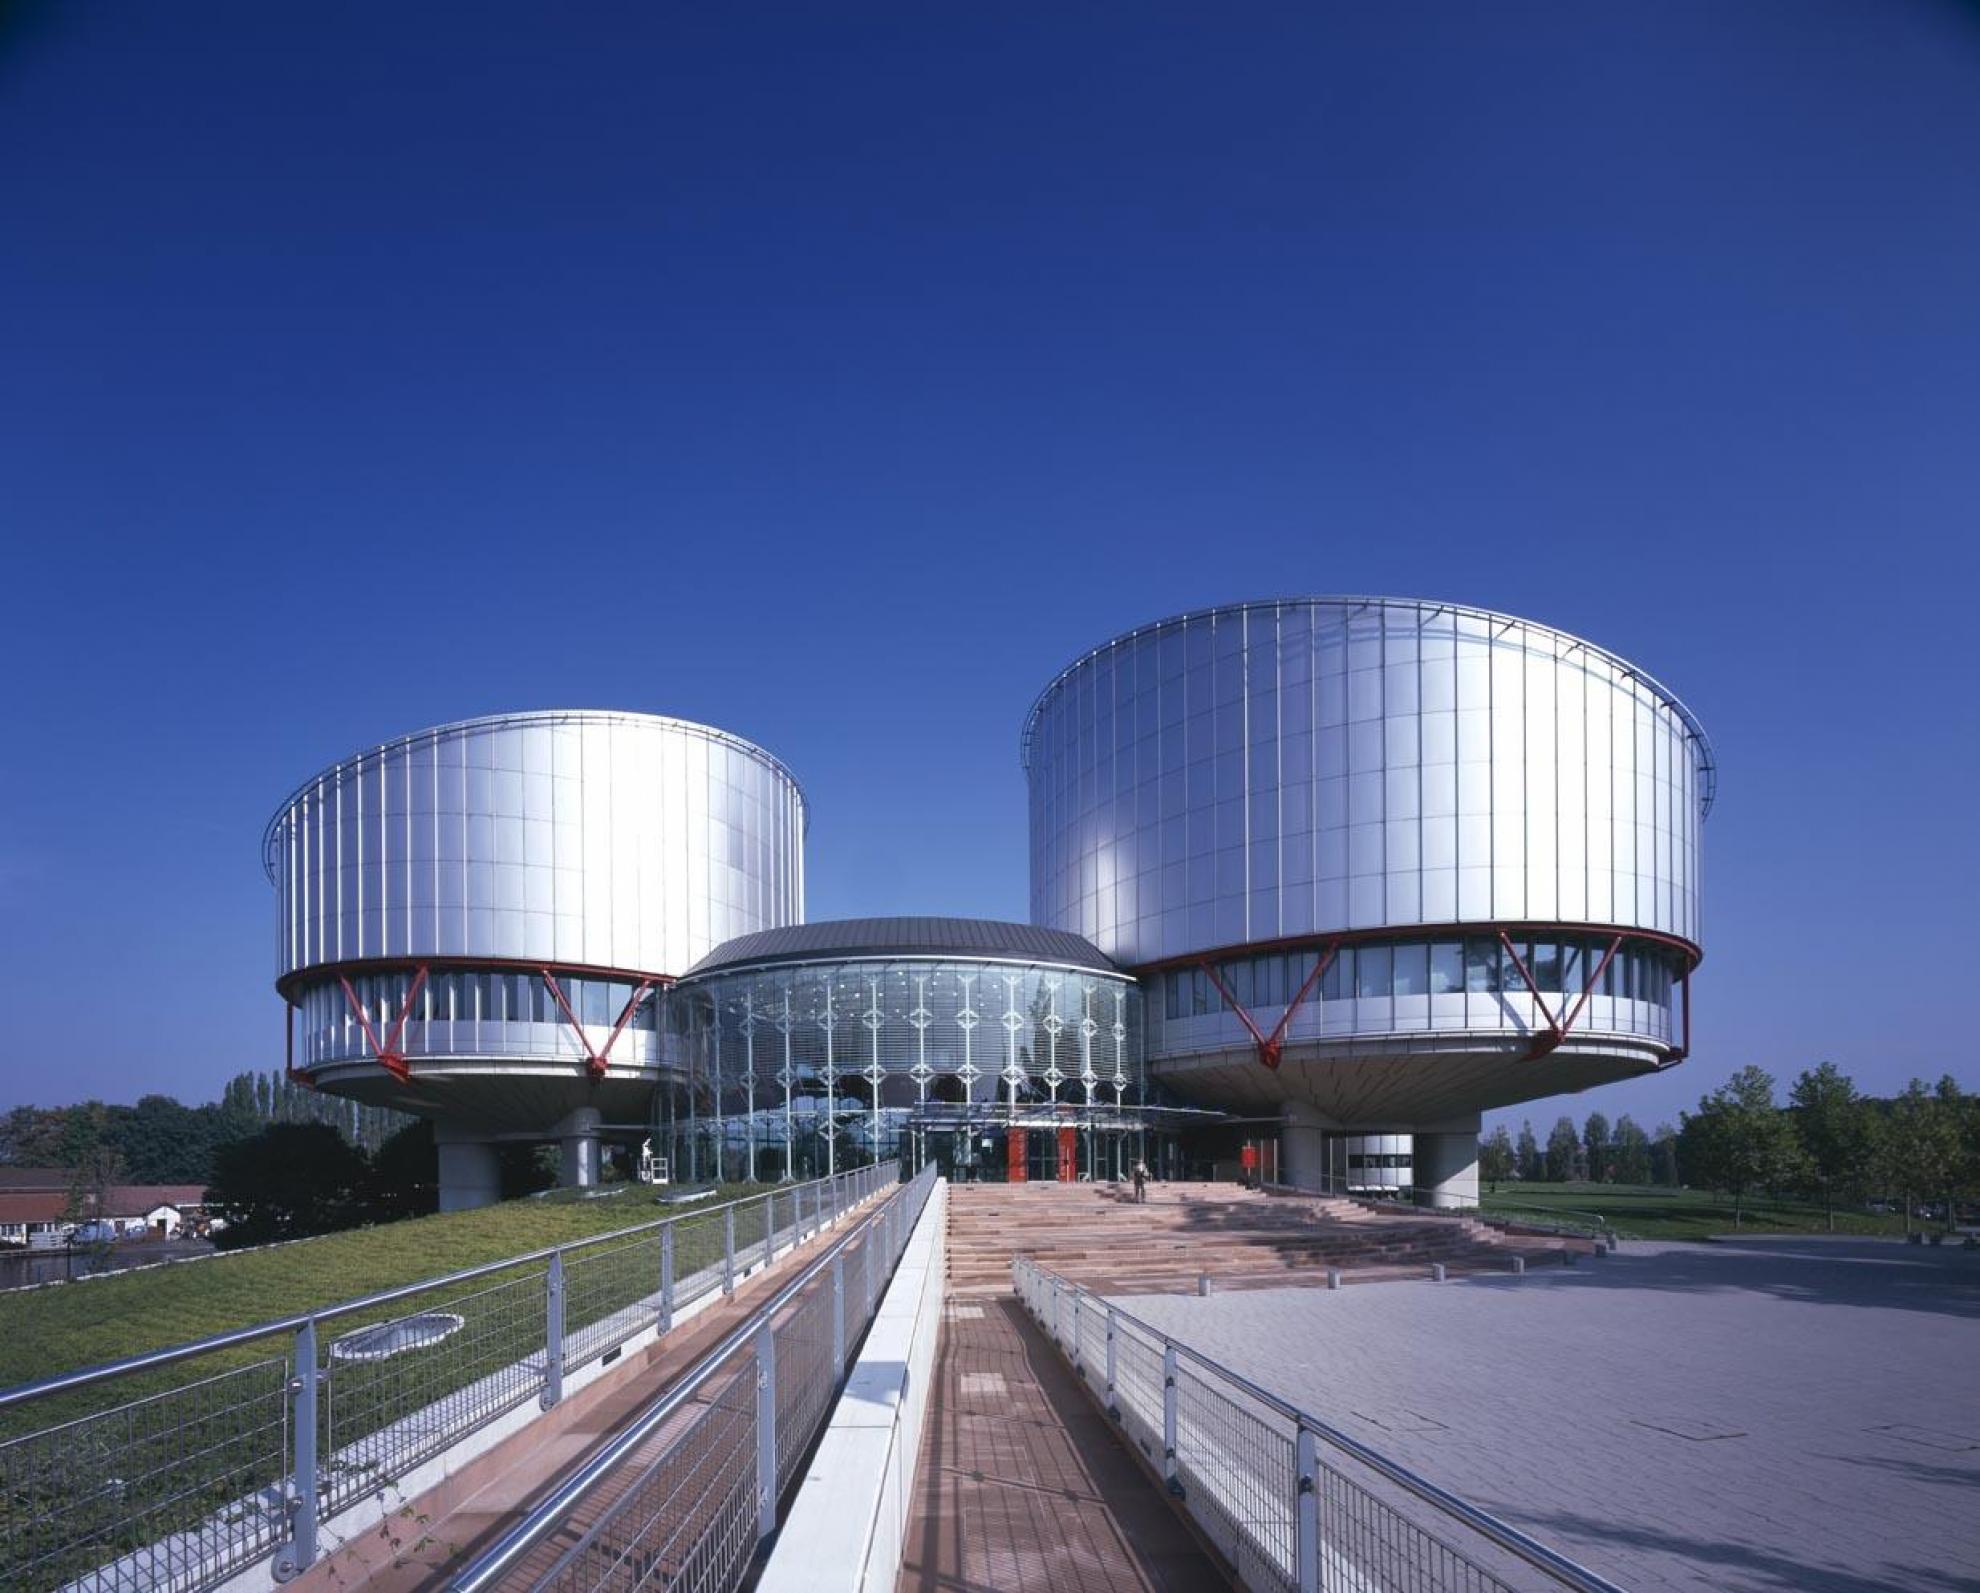 Россия против еспч. Европейский суд по правам человека в Страсбурге. Здание ЕСПЧ В Страсбурге. Европейский суд по правам человека в Страсбурге (1984). Здание европейского суда по правам человека в Страсбурге фото.